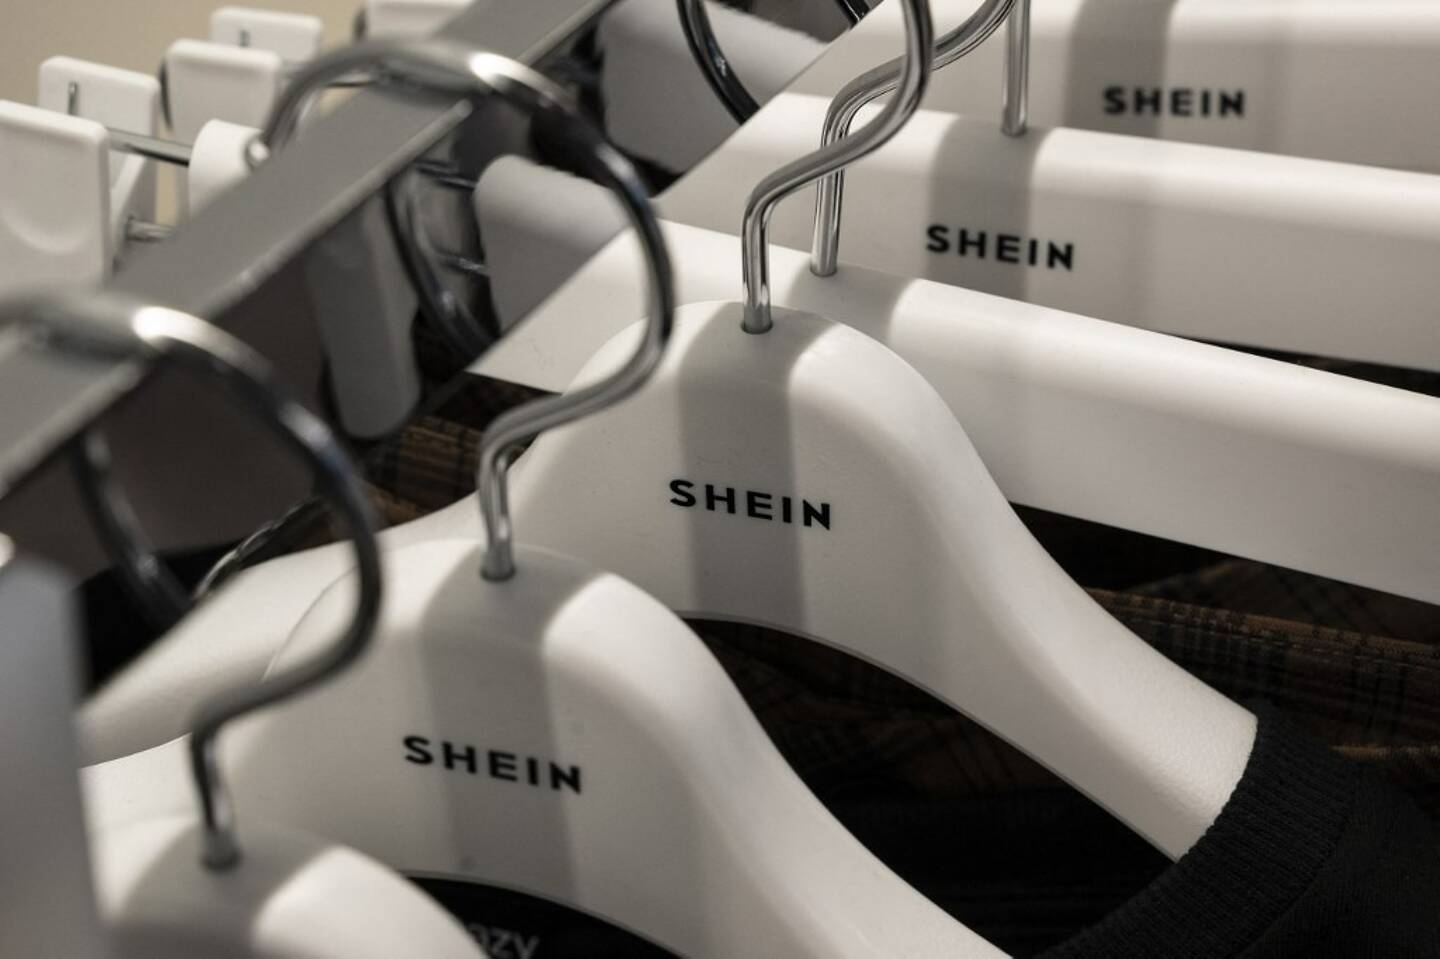 Shein revendique chaque mois 108 millions d'utilisateurs de son site dans l'Union européenne.